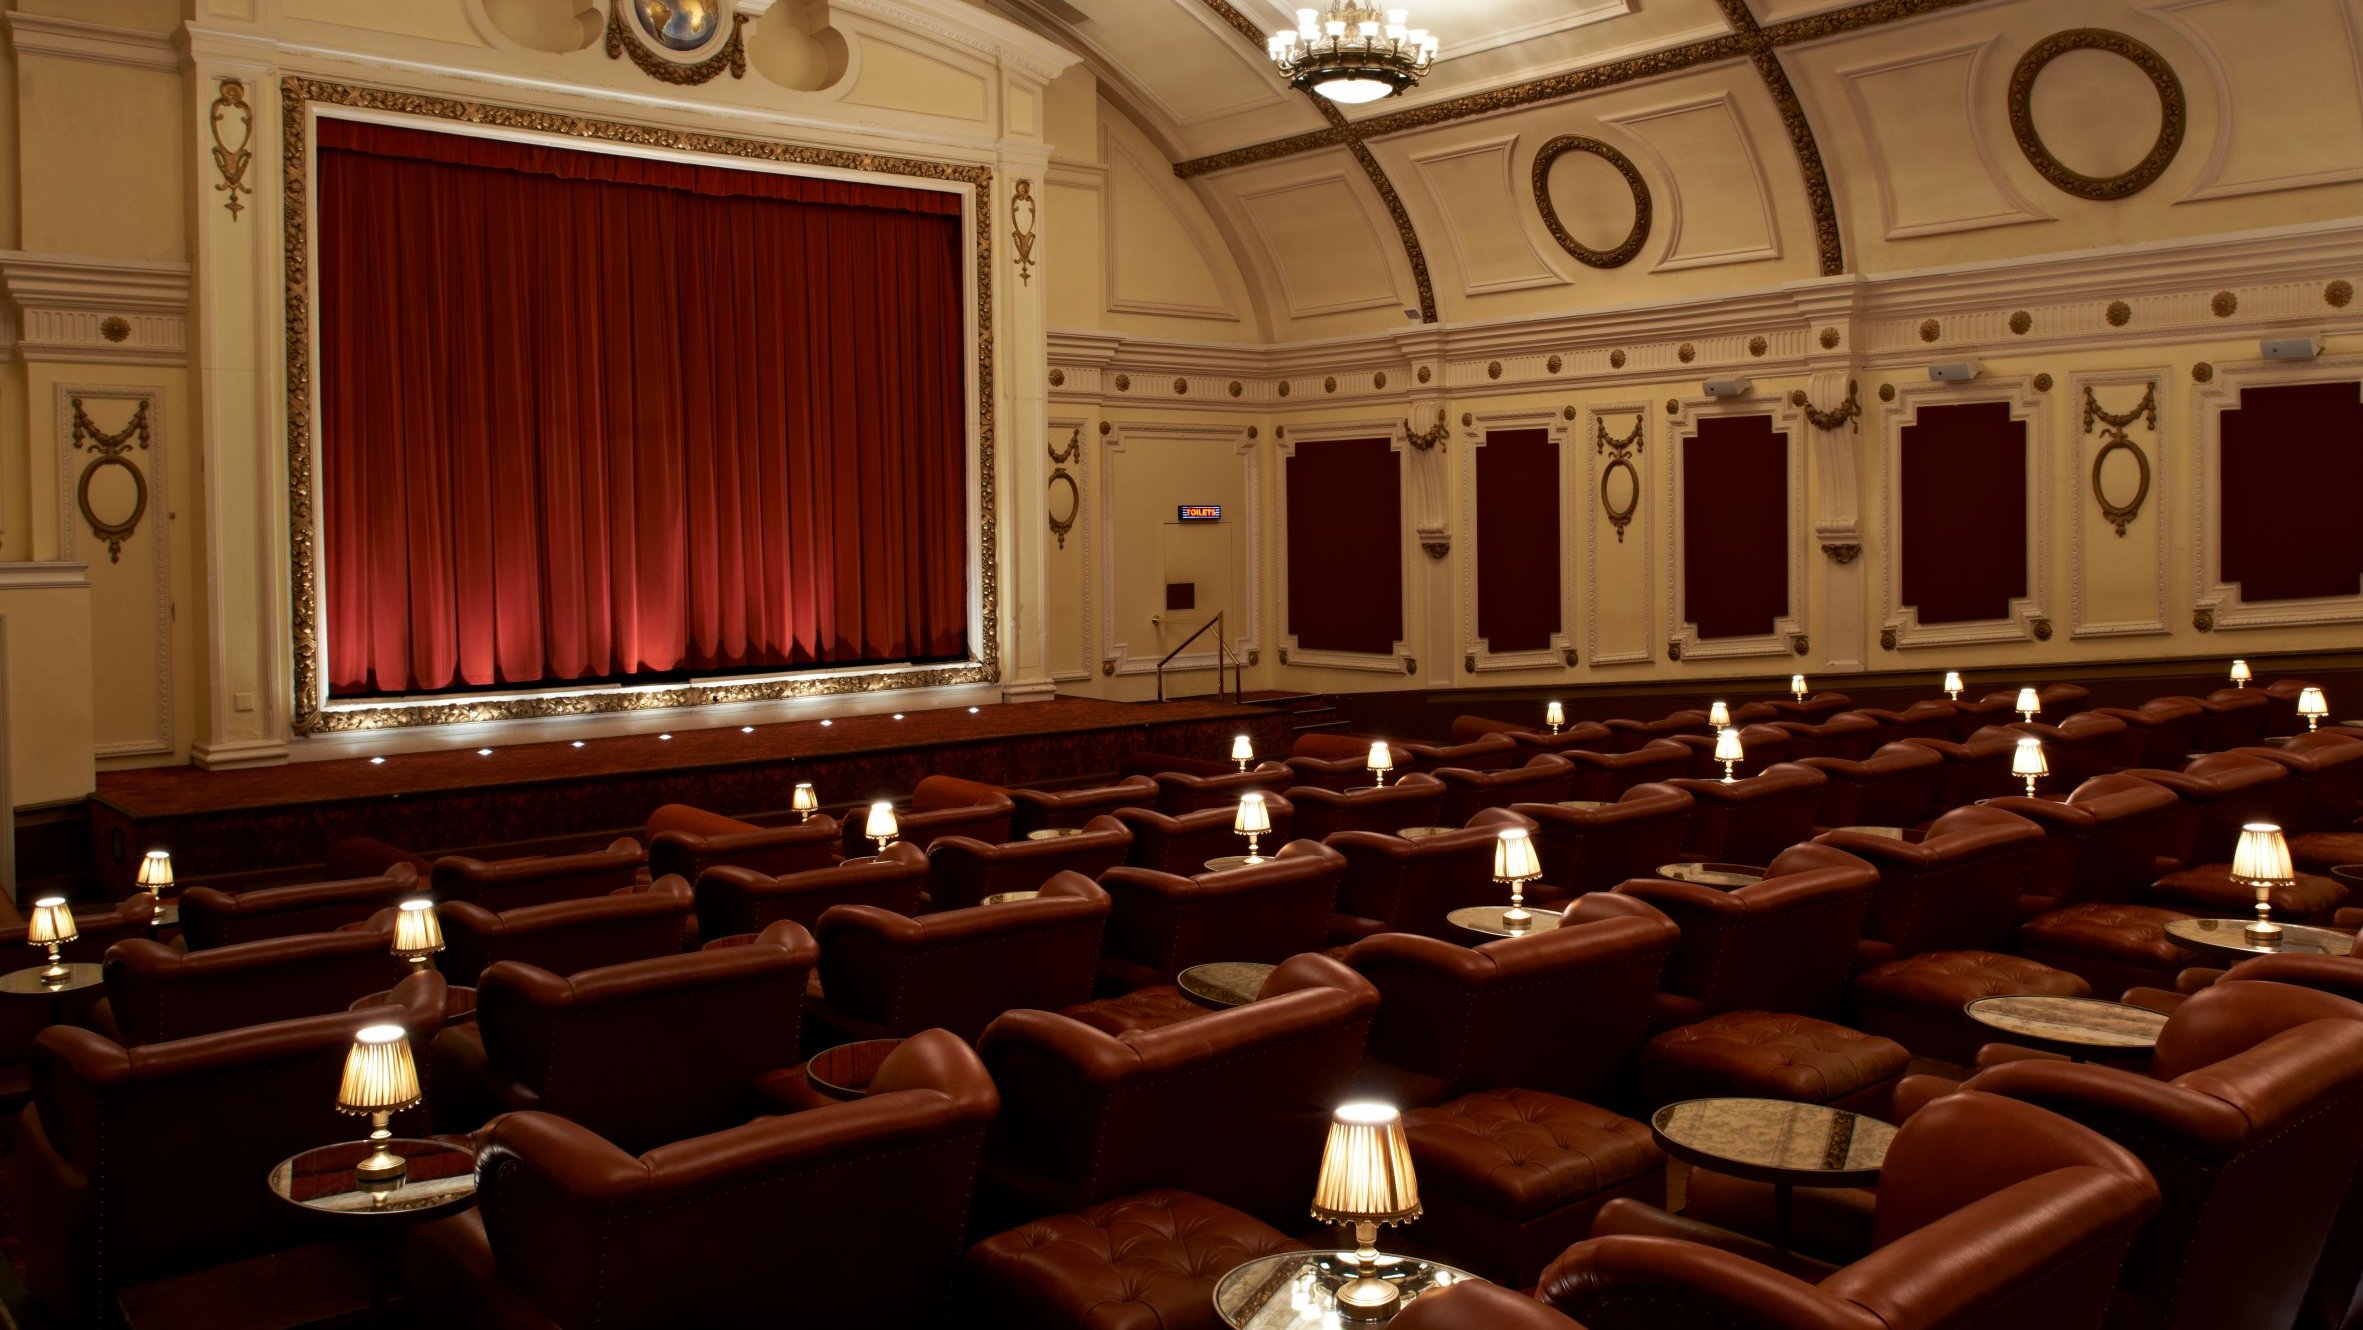 Один сеанс в день, и то не для всех: кинотеатр «Колизей» сделают ламповым и лондонским